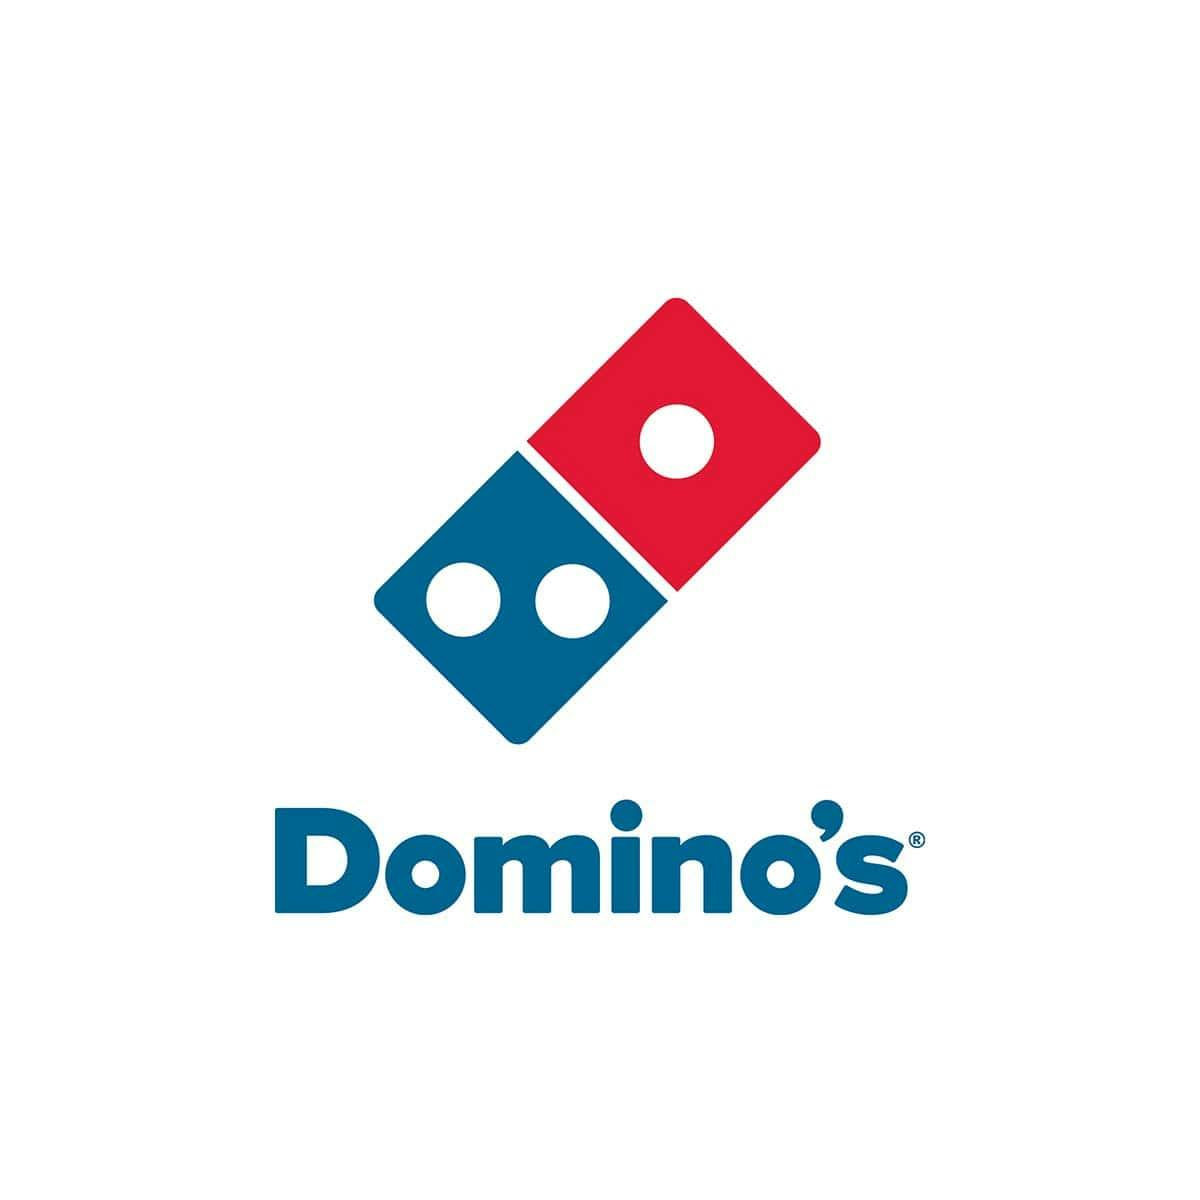  diseño de logos corporativos - domino&#039;s pizza